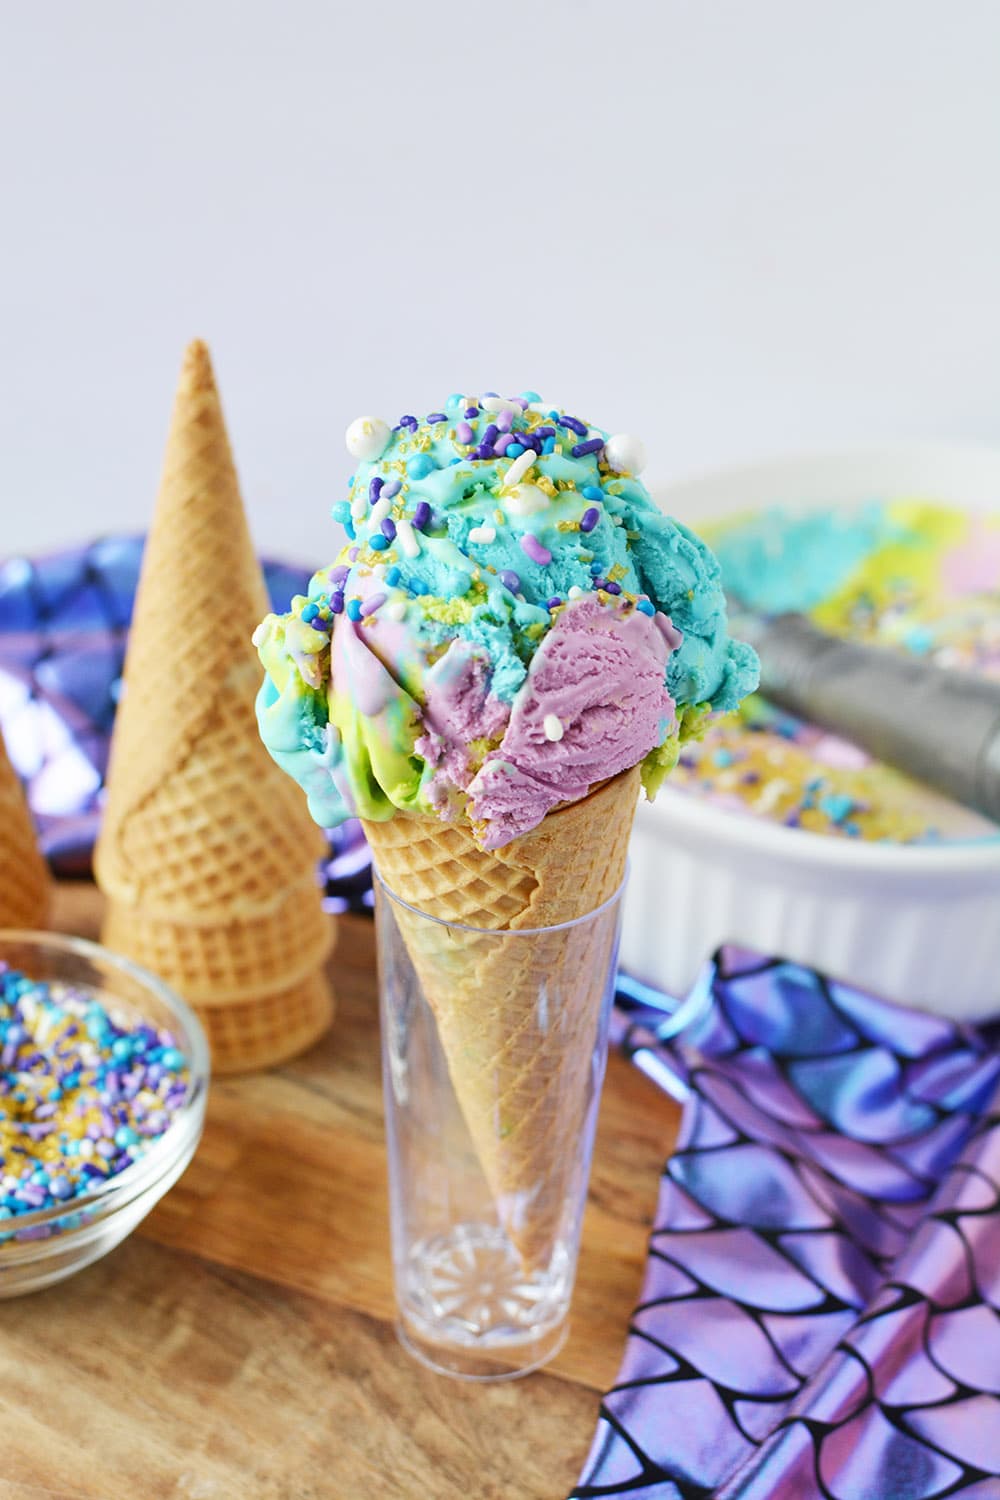 Cone of mermaid ice cream